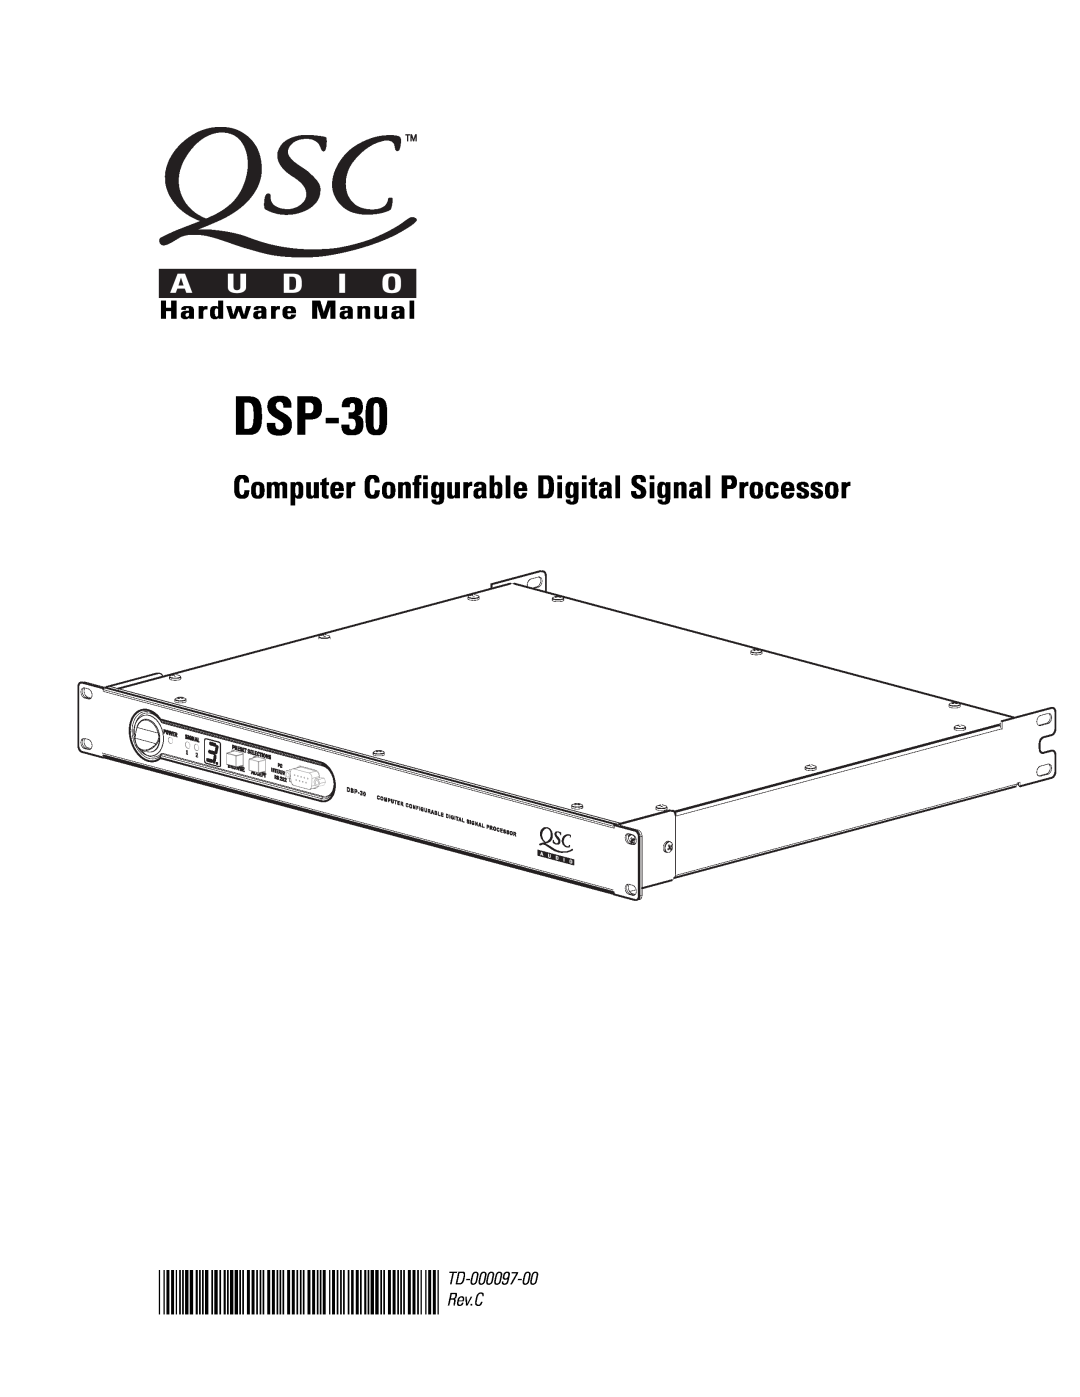 QSC Audio DSP-30 manual Computer Configurable Digital Signal Processor, Hardware Manual, Rev.C, TD-000097-00* TD-000097-00 